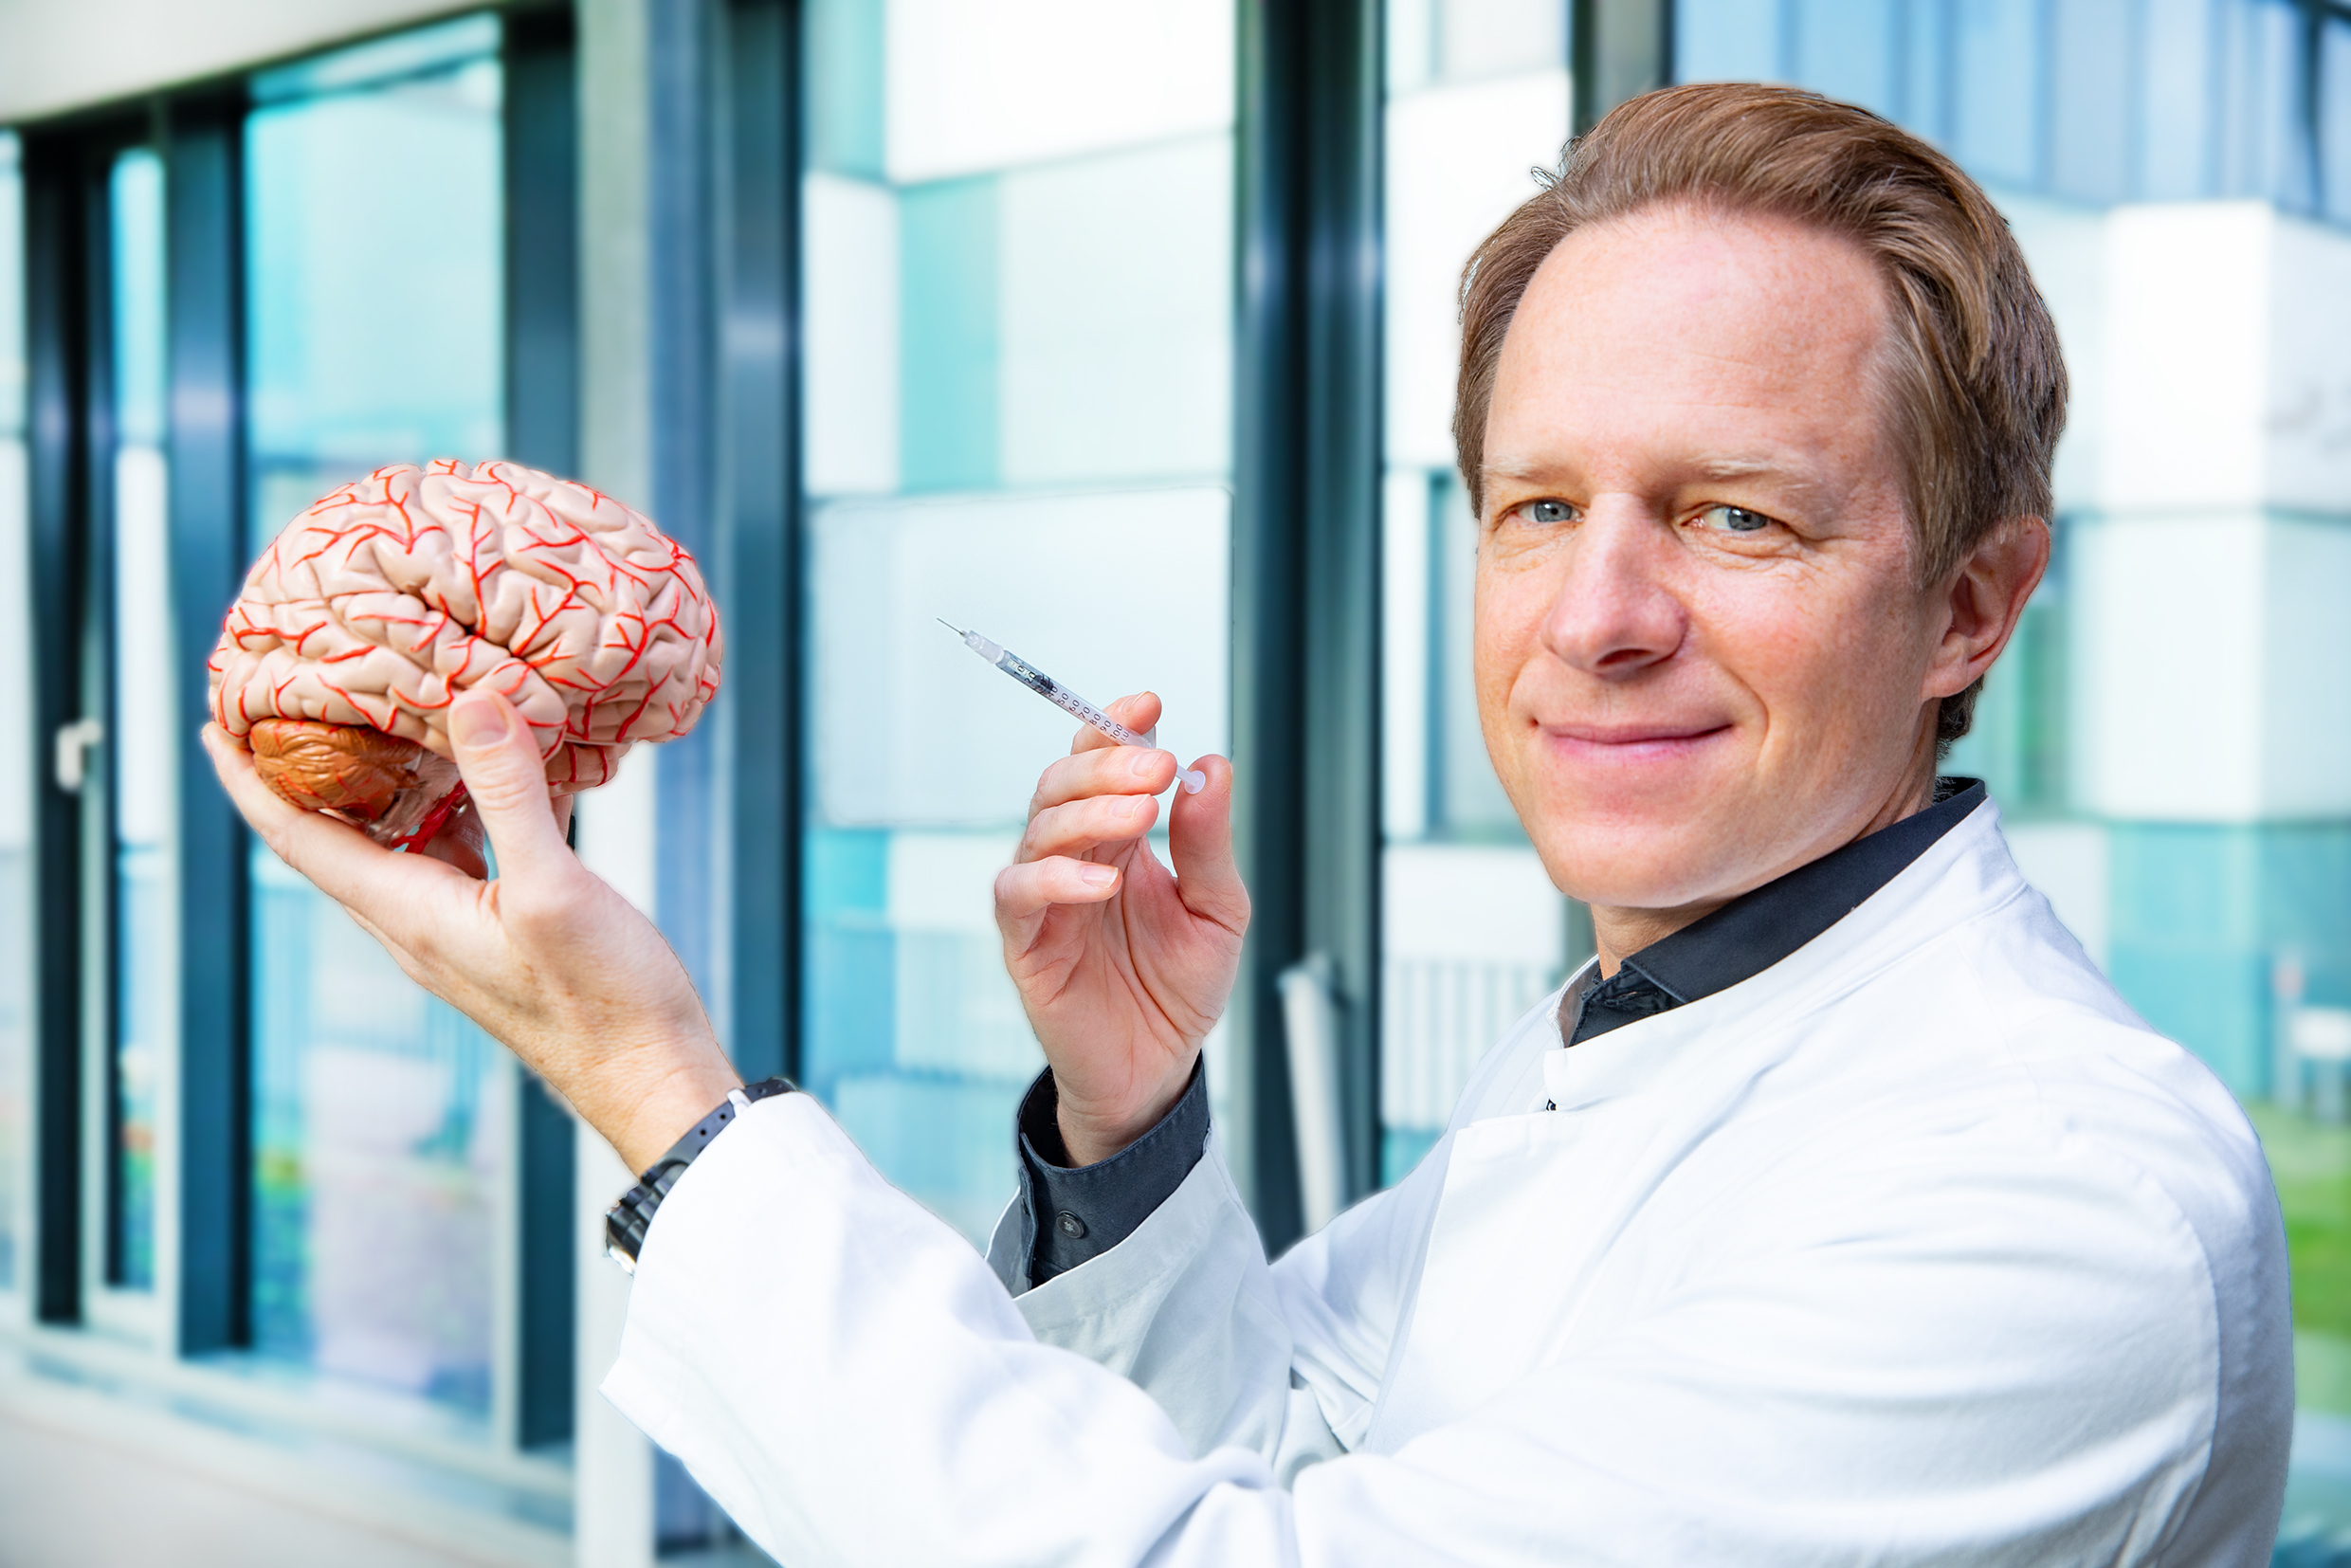 Professor Dr. Tillmann Krüger hält das Modell eines menschlichen Gehirns und eine Spritze in den Händen.